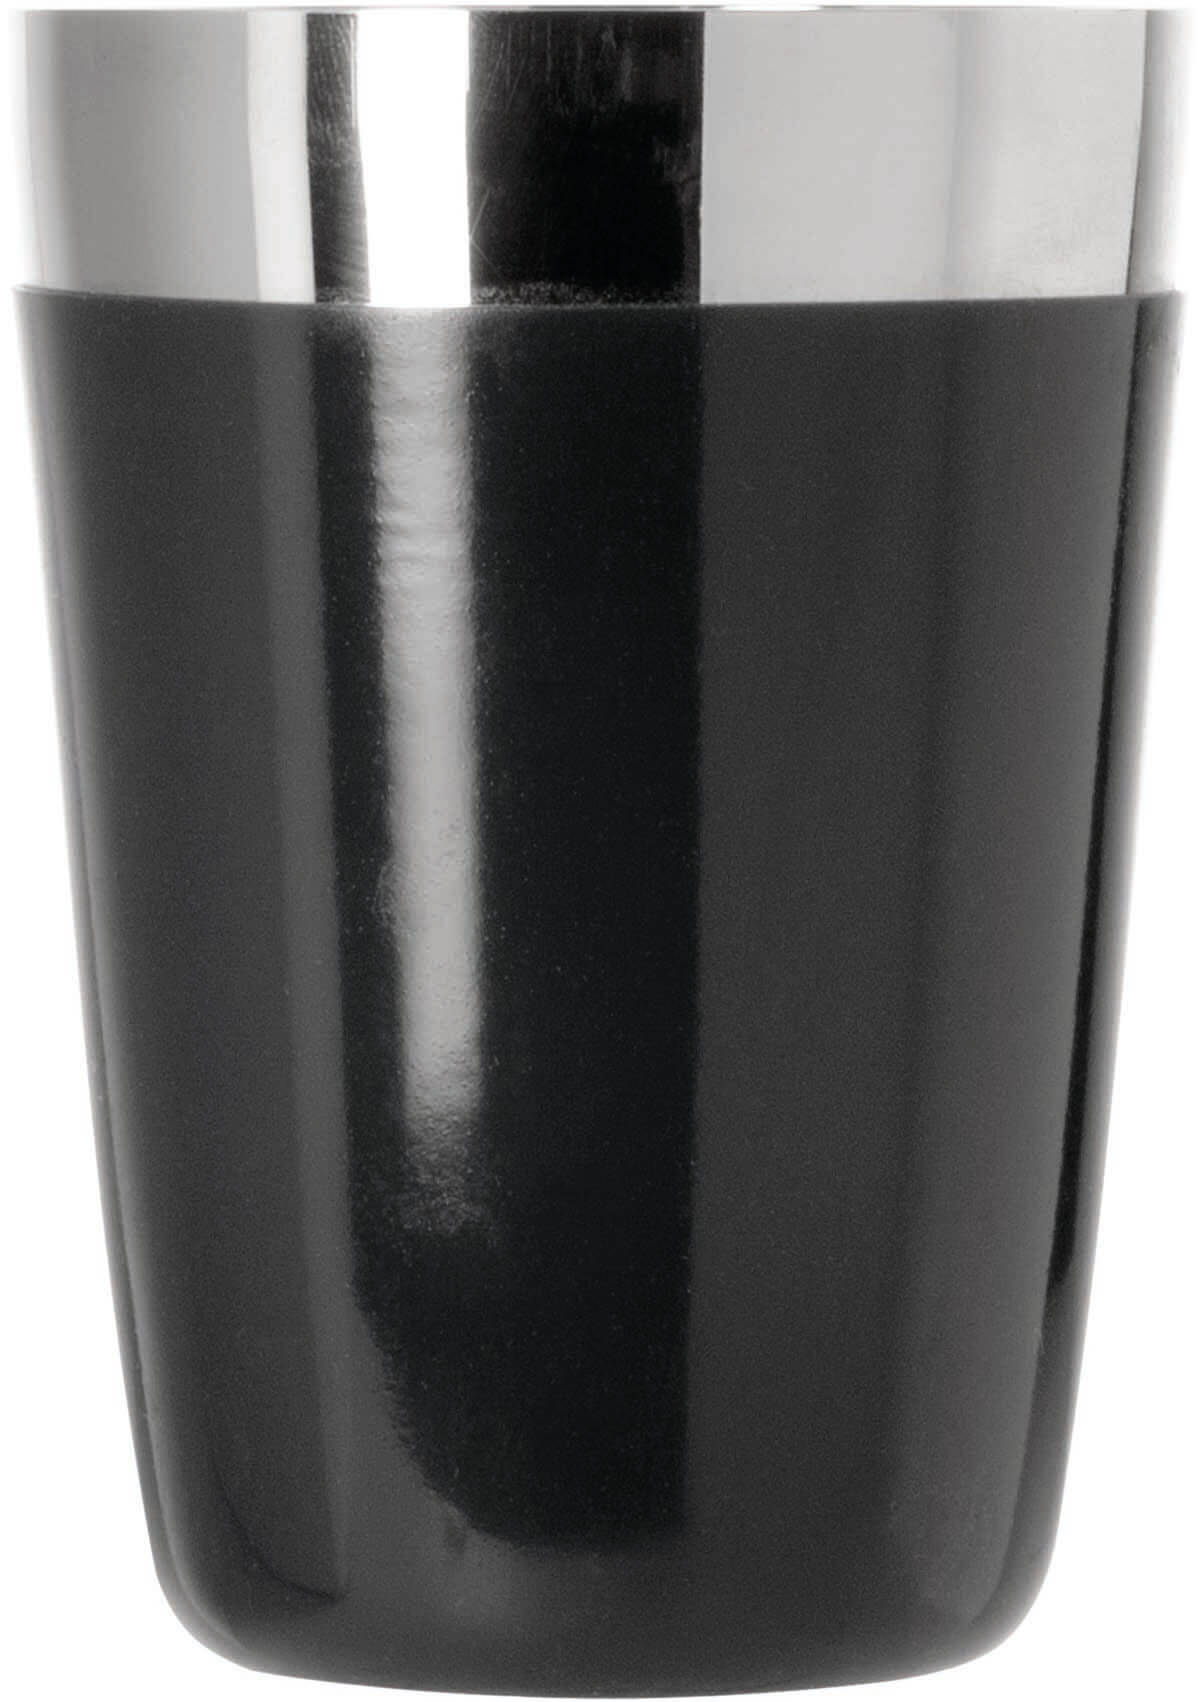 Speedshaker vinyl coated black 47cl